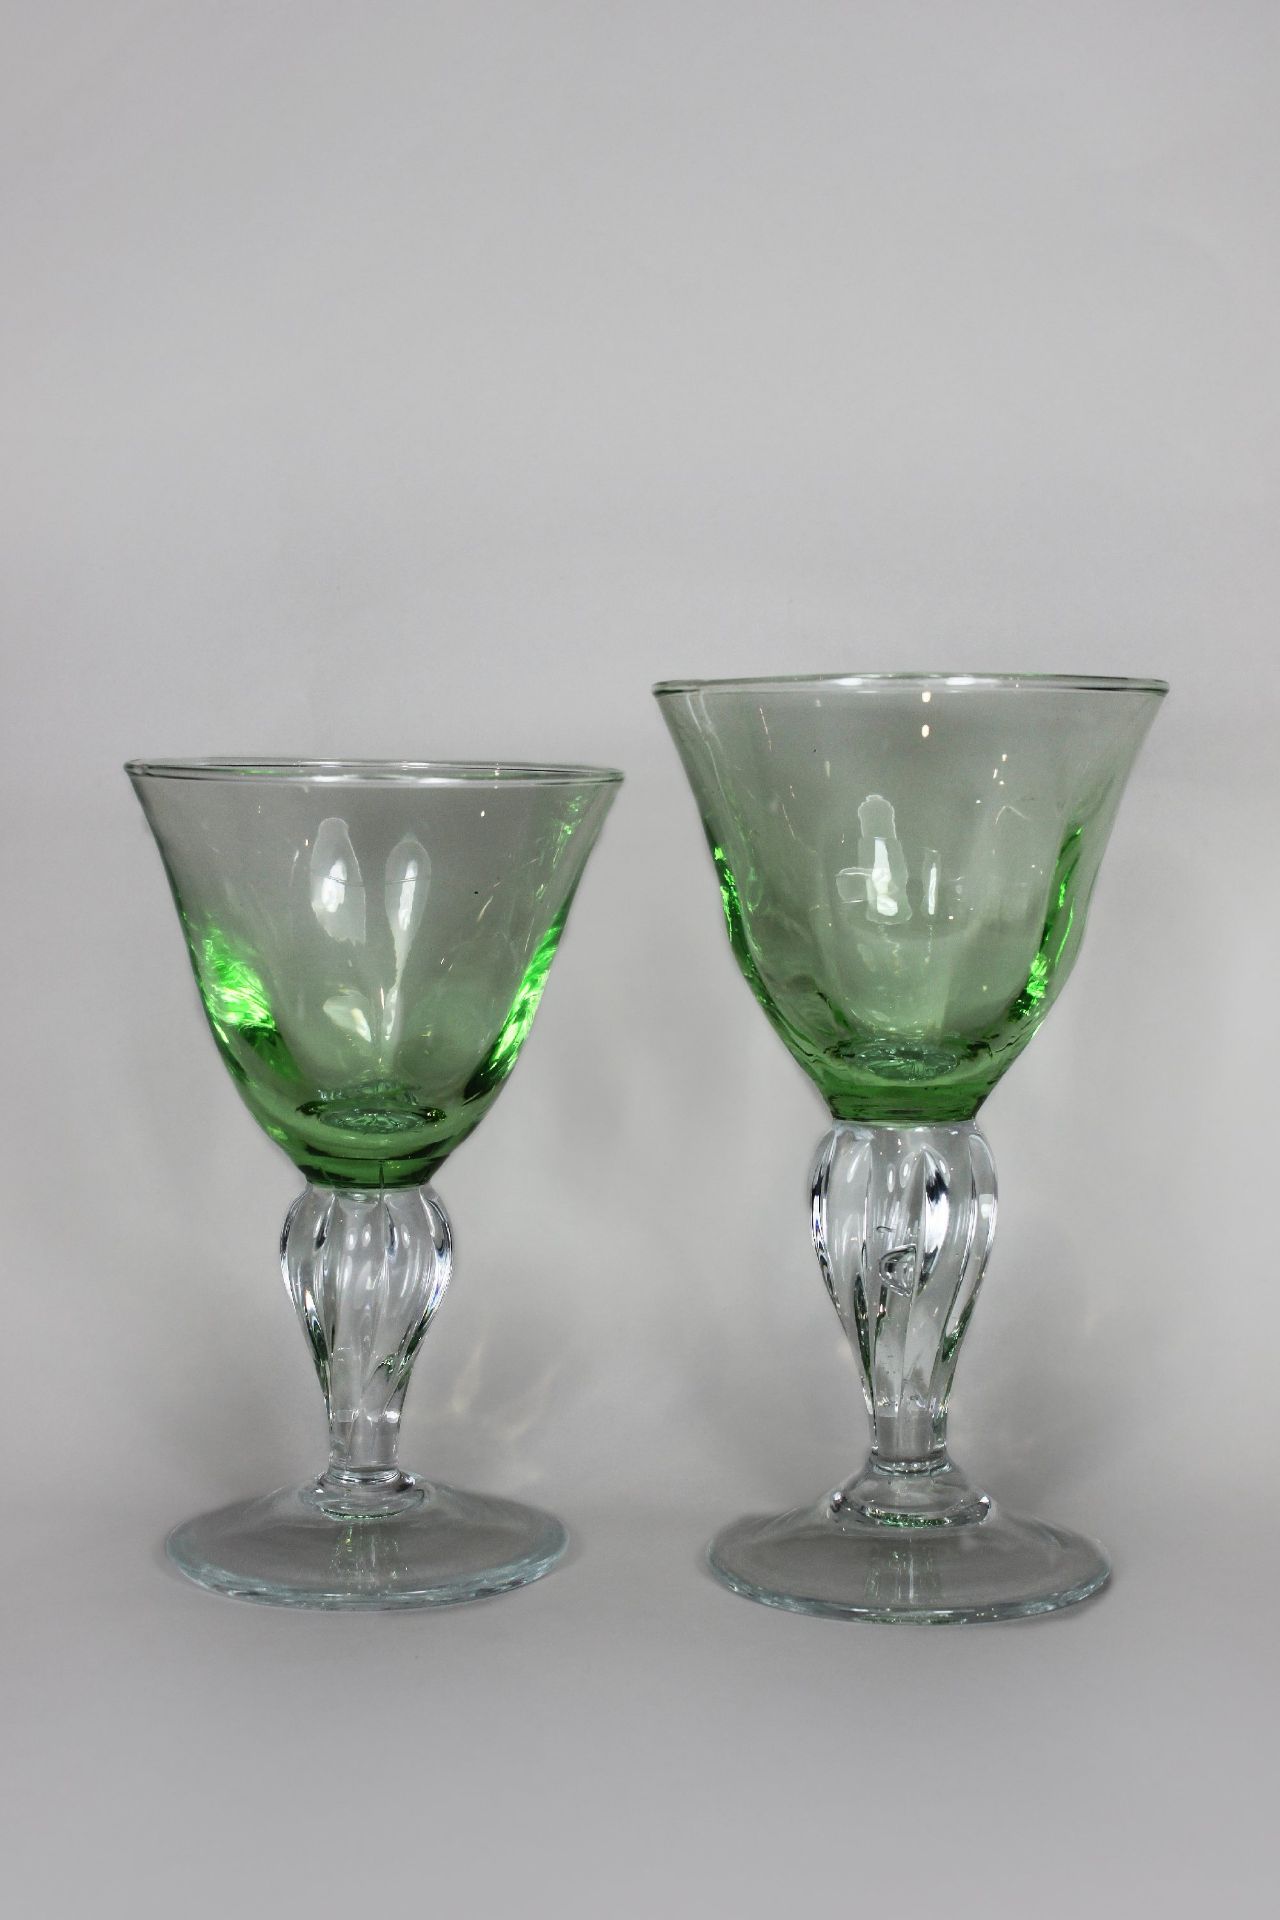 Glaskelche 7 Stk., Jugendstil, farbloses Kristalglas, grün überfangen, fünf große Kelche, zwei< - Bild 2 aus 2